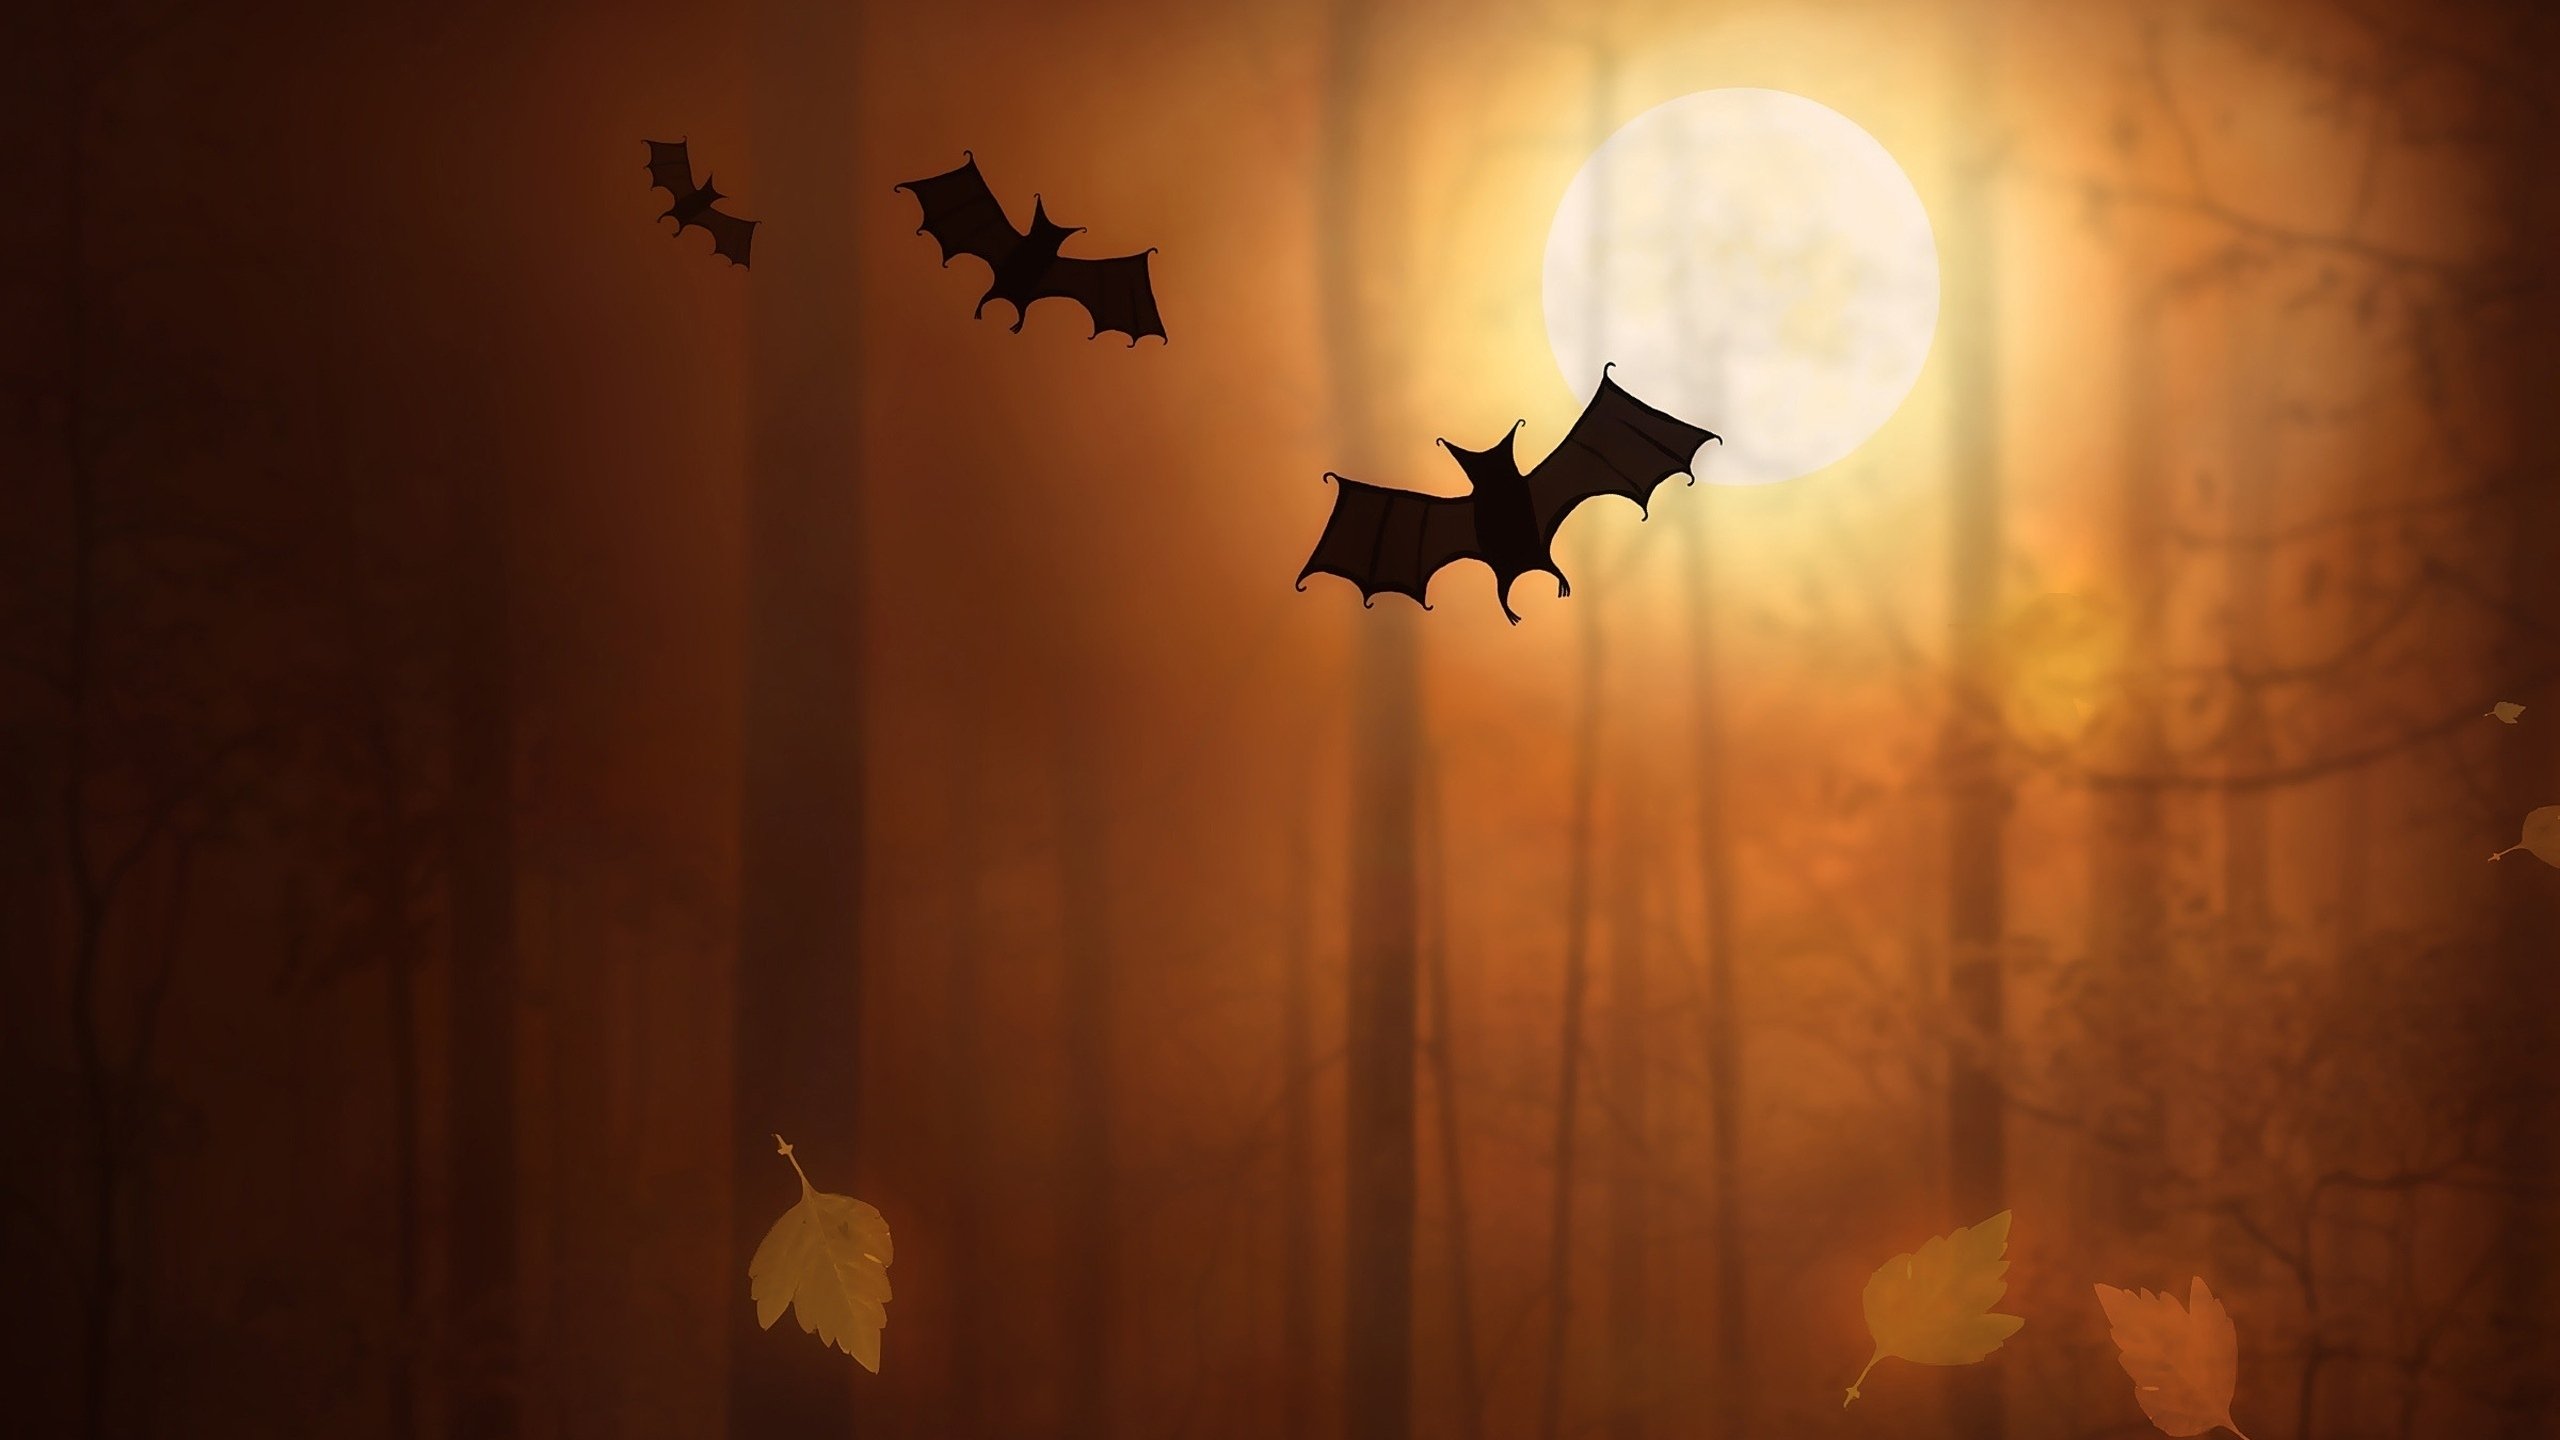 night, Moon, Trees, Fallen leaves, Bats, Digital art, Silhouette Wallpaper